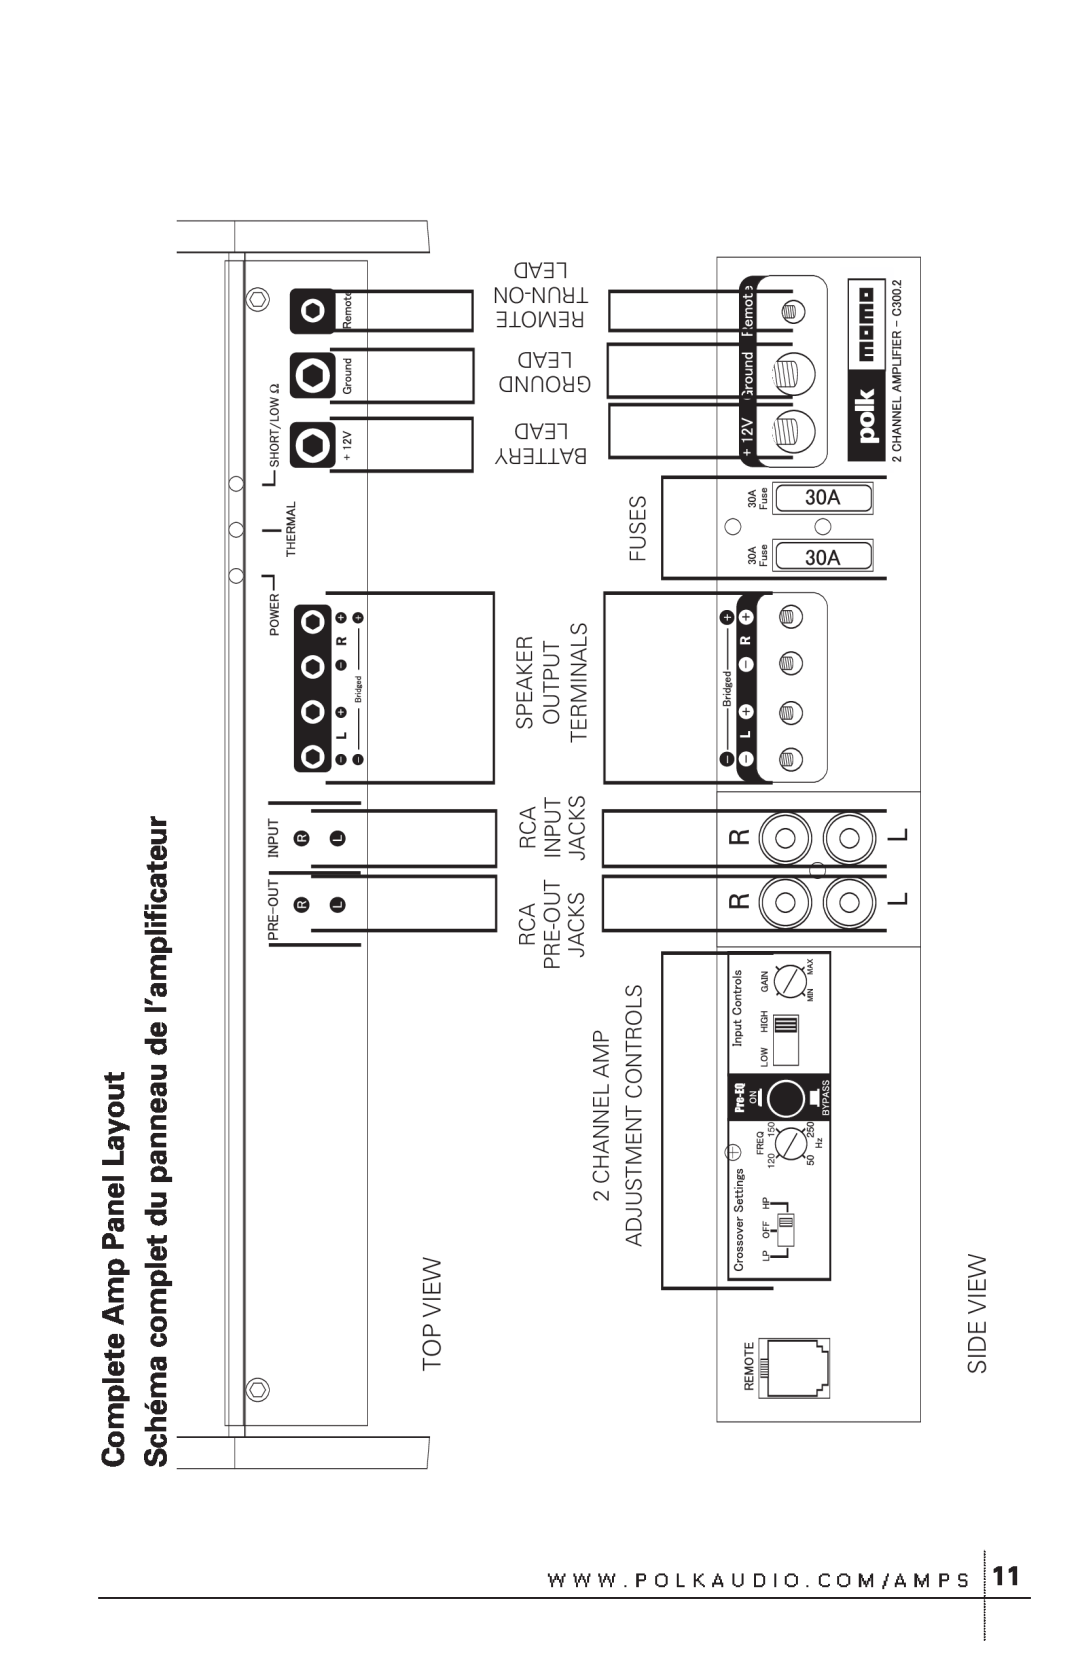 Polk Audio C500.1 owner manual Complete Amp Panel Layout, Schéma complet du panneau de l’amplificateur, Top View, Side View 